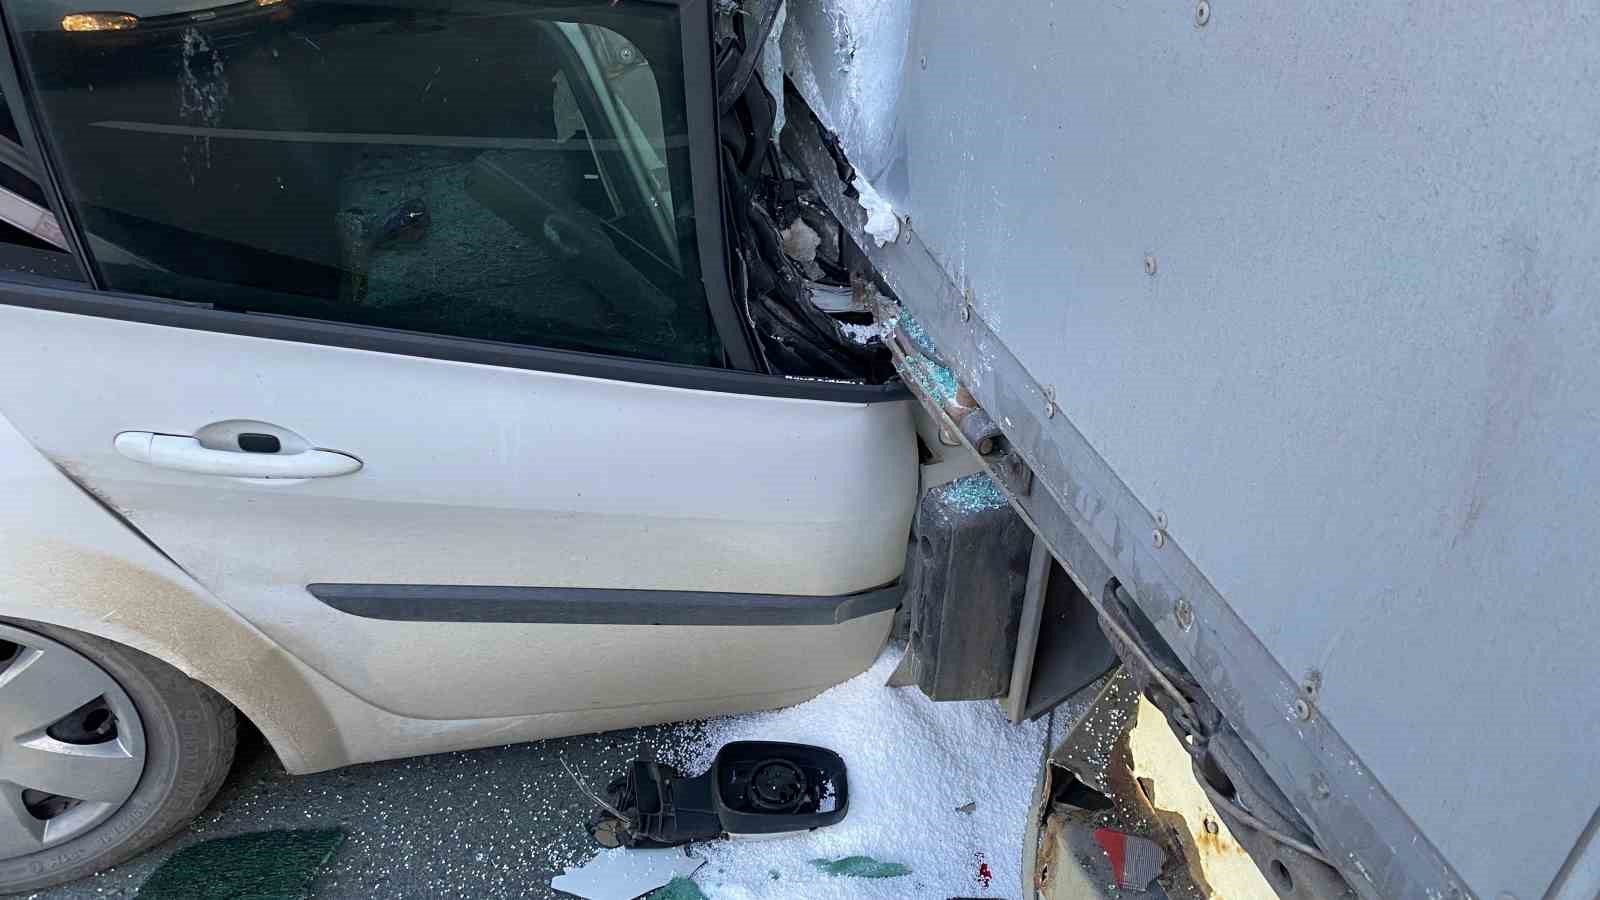 Artvin’de otomobil duran tıra arkadan çarptı: 1 yaralı
